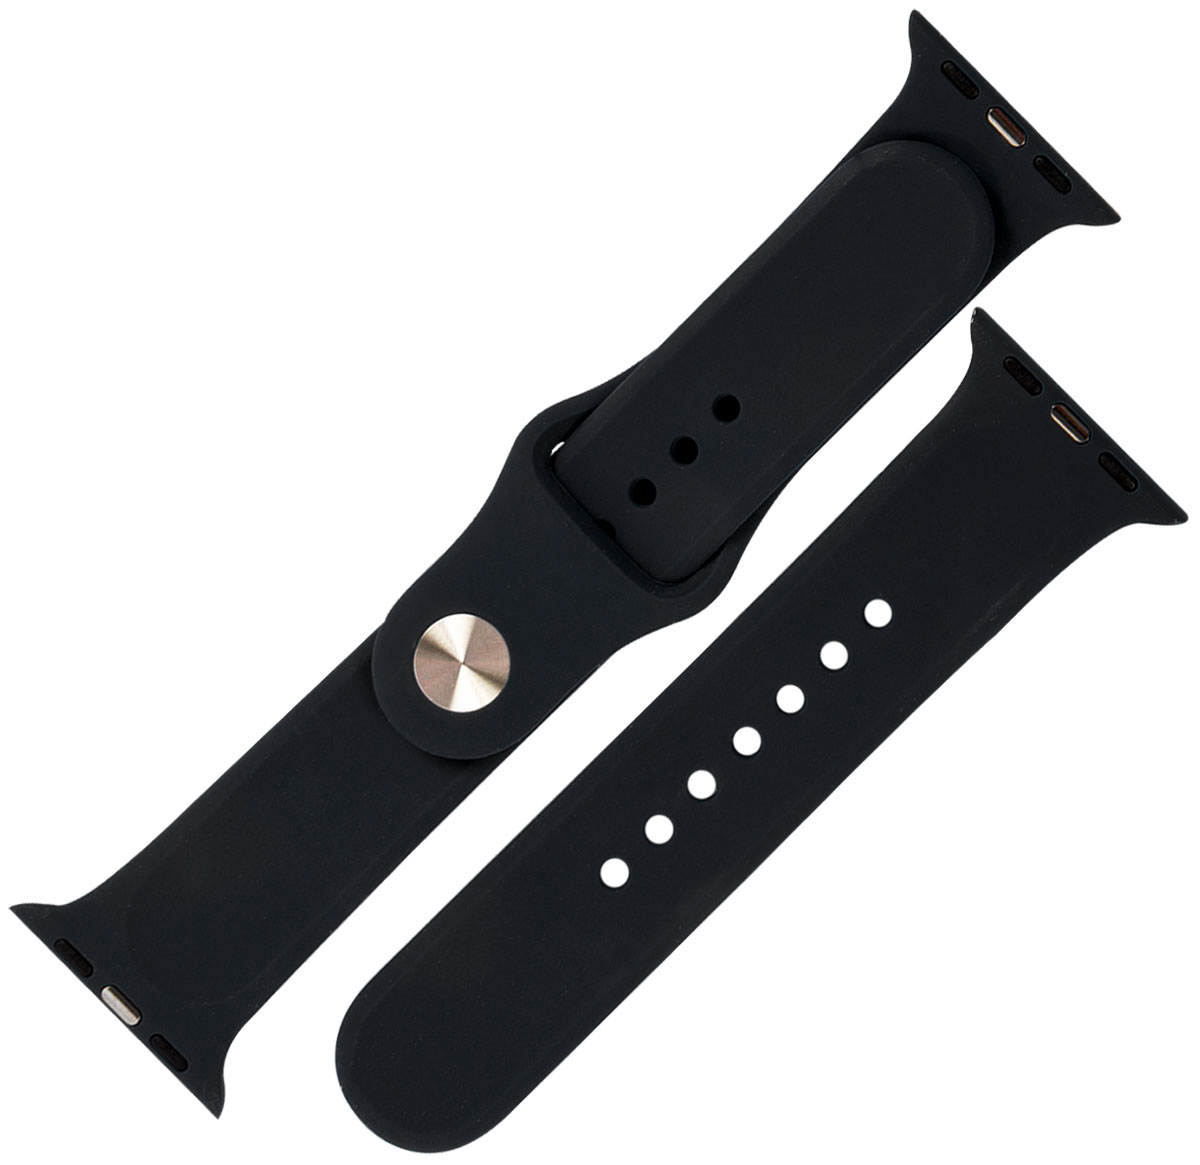 Ремешок силиконовый mObility для Apple watch – 42-44 мм (S3/S4/S5 SE/S6), черный ремешок силиконовый mobility для apple watch – 42 44 мм s3 s4 s5 se s6 черный